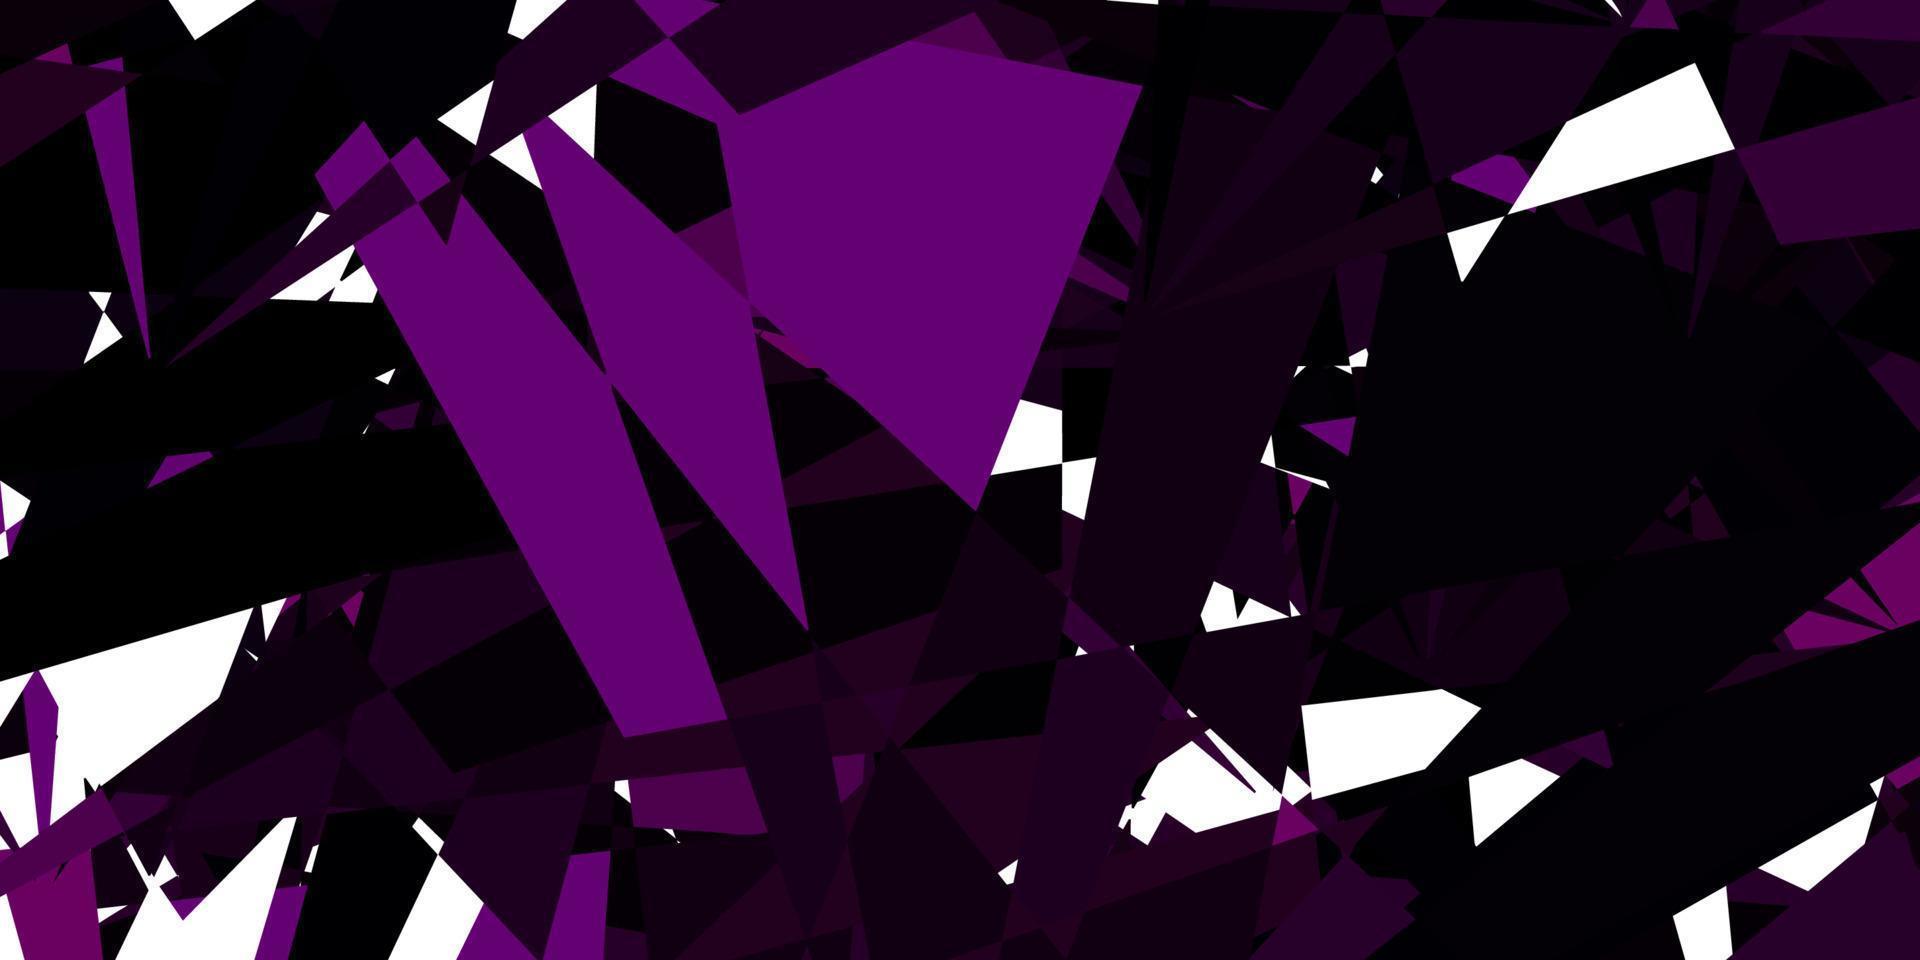 donkerpaarse vector achtergrond met veelhoekige vormen.